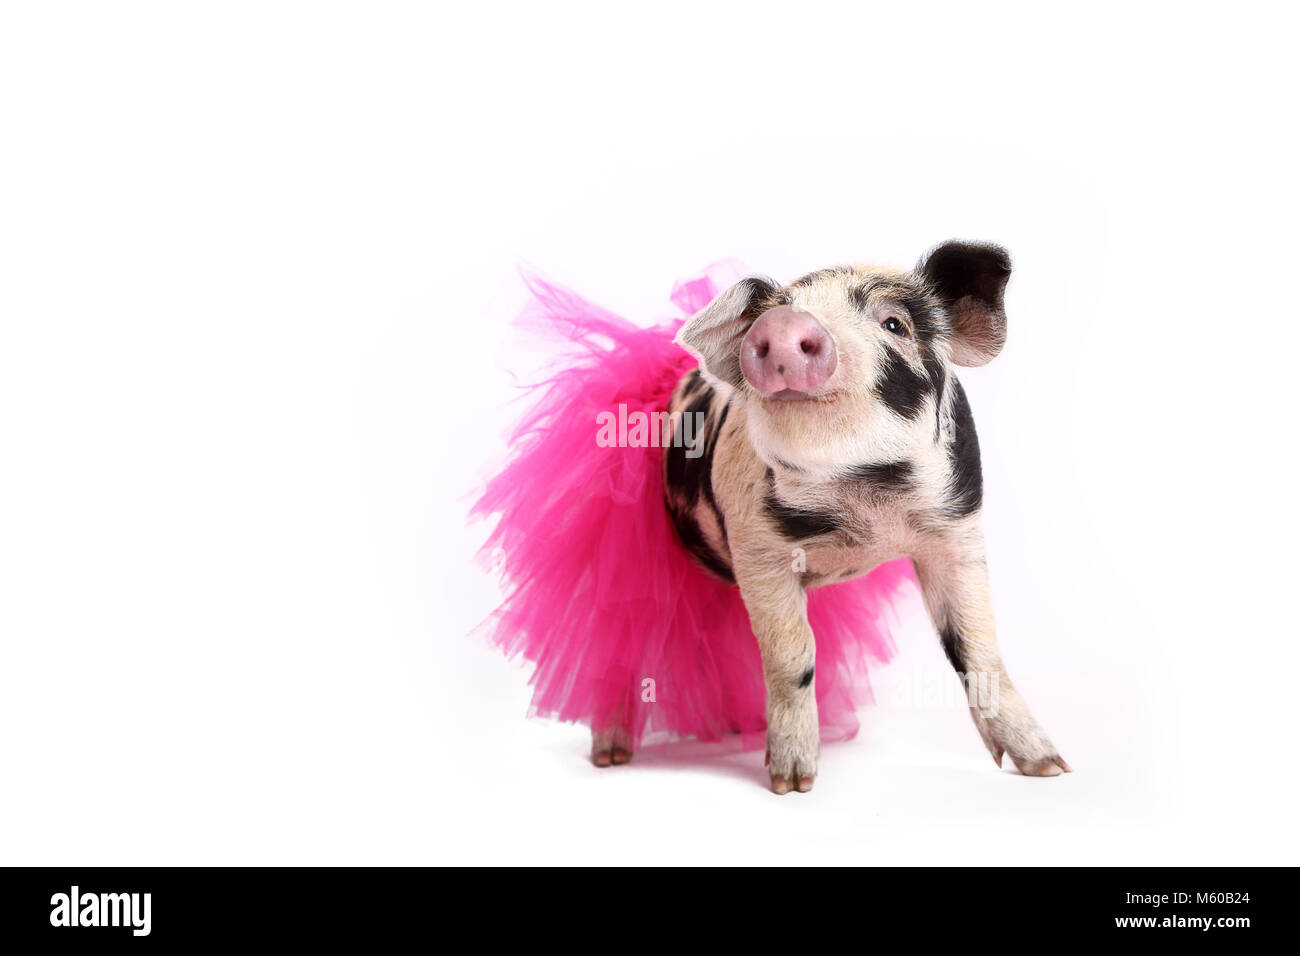 Hausschwein, Turopolje x?. Ferkel (4 Wochen alt) trägt einen rosa Tutu, stehend. Studio Bild vor einem weißen Hintergrund zu sehen. Deutschland Stockfoto